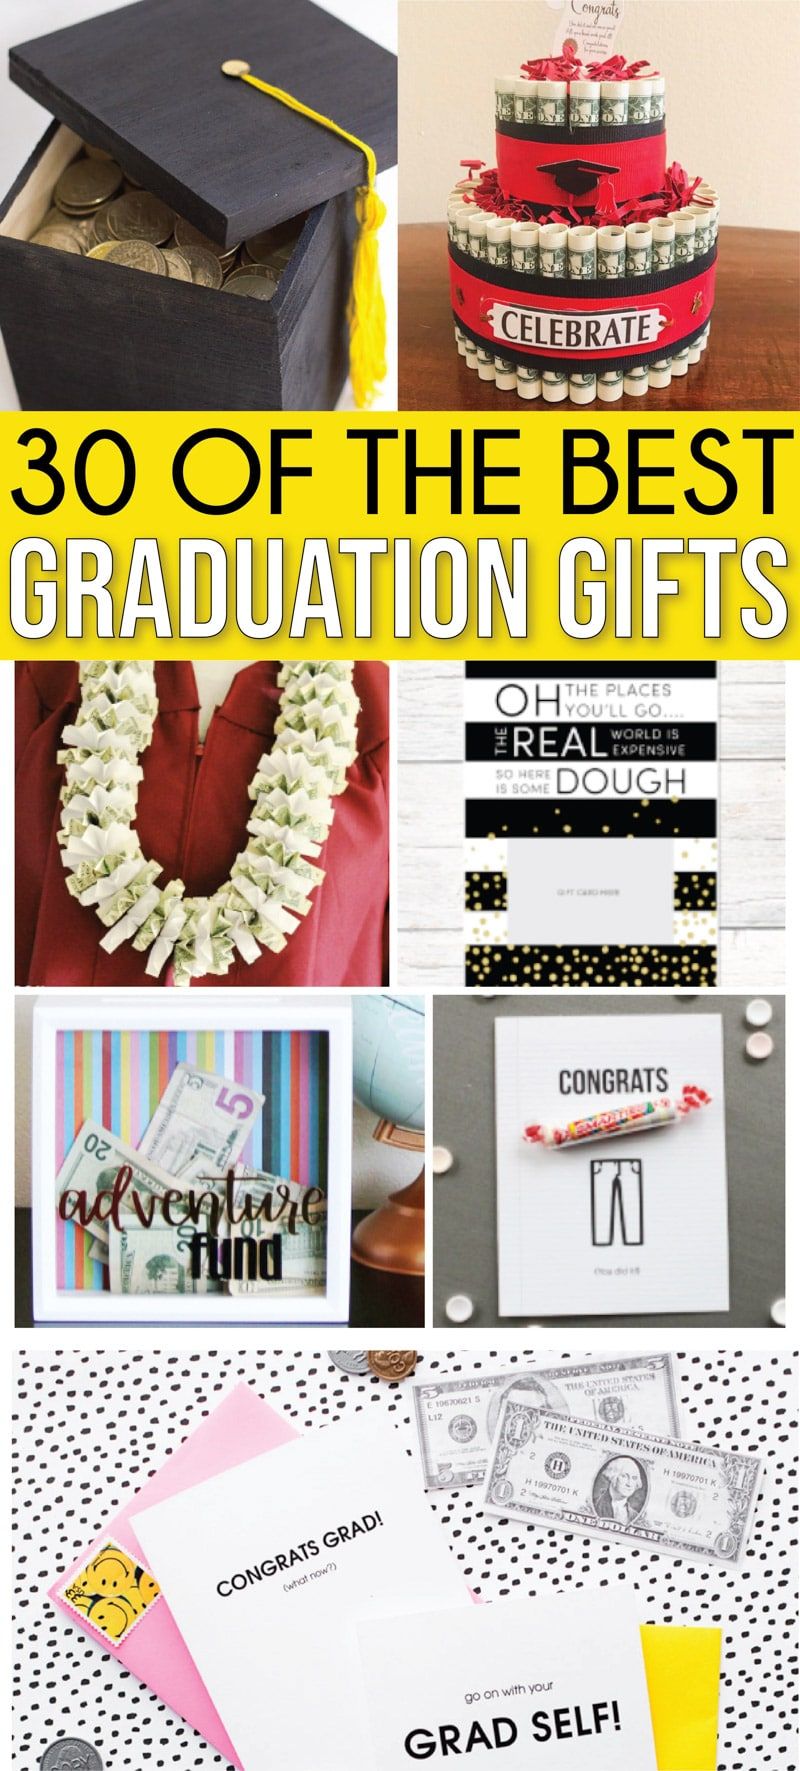 सबसे अच्छा स्नातक उपहार विचारों कभी! हाई स्कूल और कॉलेज के स्नातक के अंतिम संग्रह में लड़कियों के लिए, लड़कों के लिए, दोस्तों के लिए और यहां तक ​​कि प्रेमी के लिए भी विचारों का उपहार है! महान सस्ते उपहार और पैसे या उपहार कार्ड उपहार के मजेदार तरीके के टन!